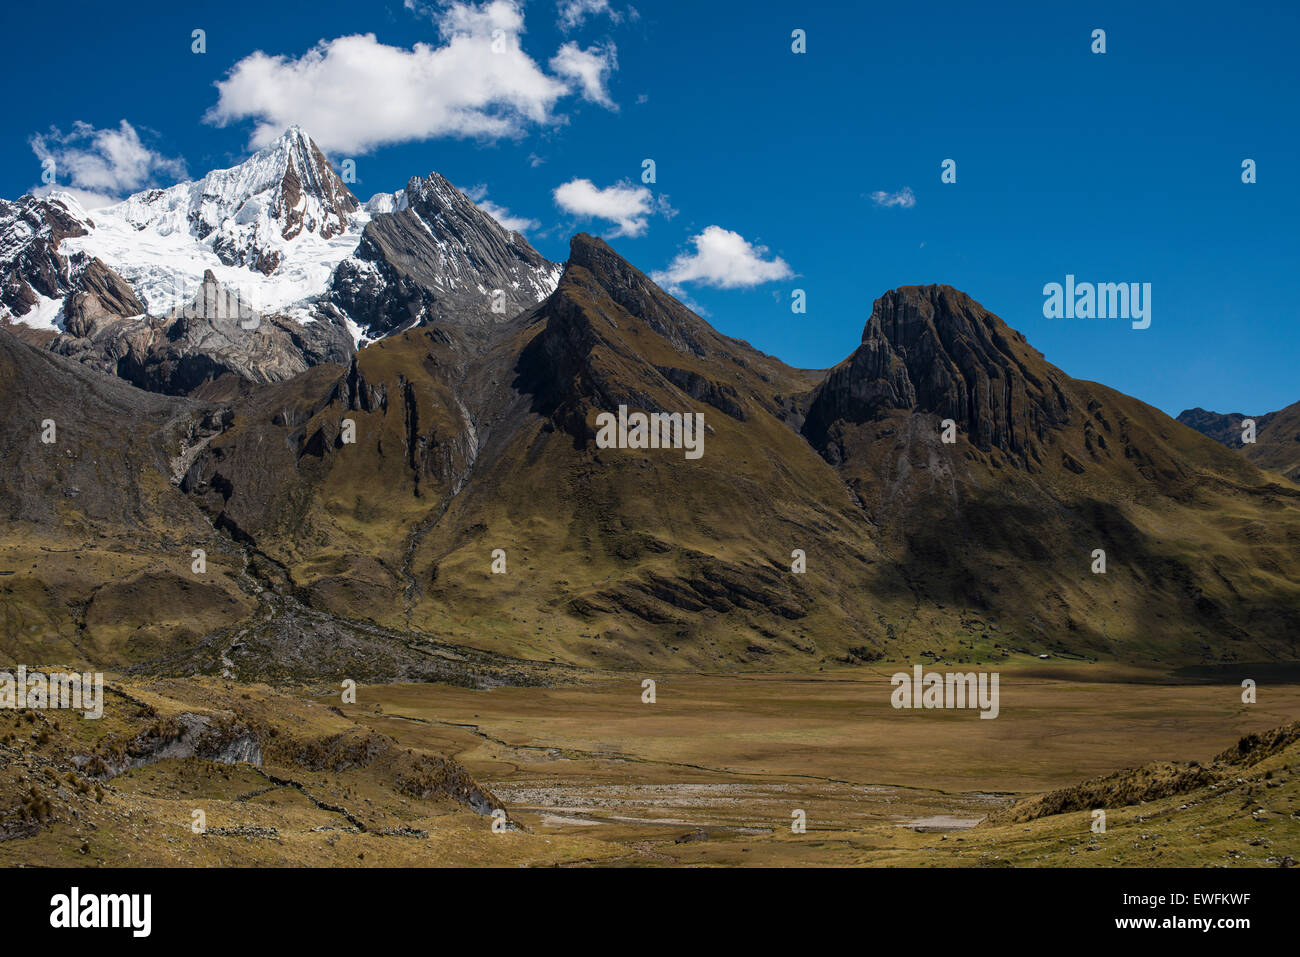 Montagnes couvertes de neige et de roches, de montagnes de la Cordillère Huayhuash, les Andes, le nord du Pérou, Pérou Banque D'Images